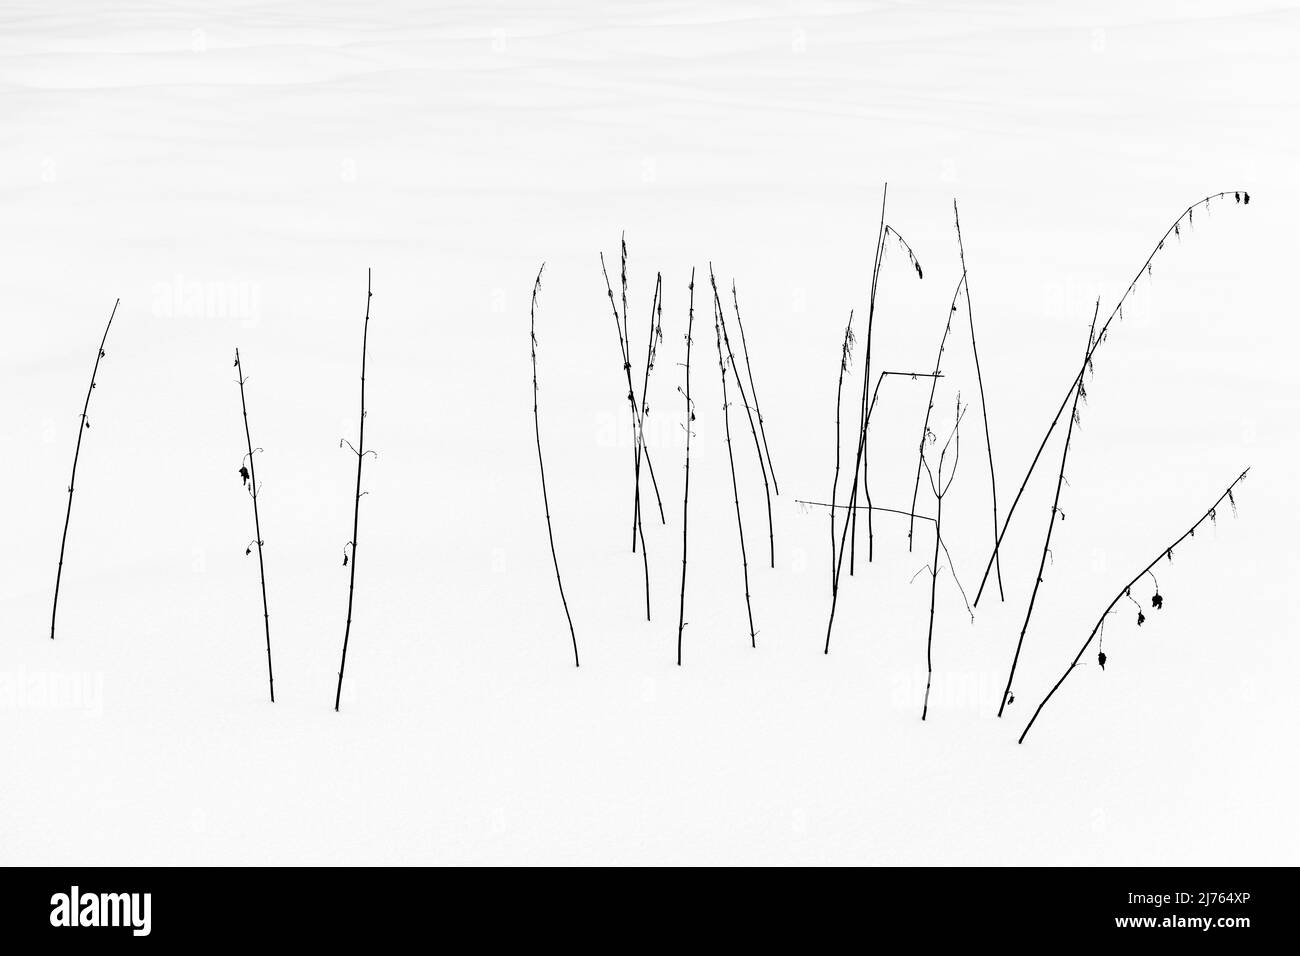 Un grupo de ortiga que se aferra en el blanco de la nieve en blanco y negro. Foto de stock